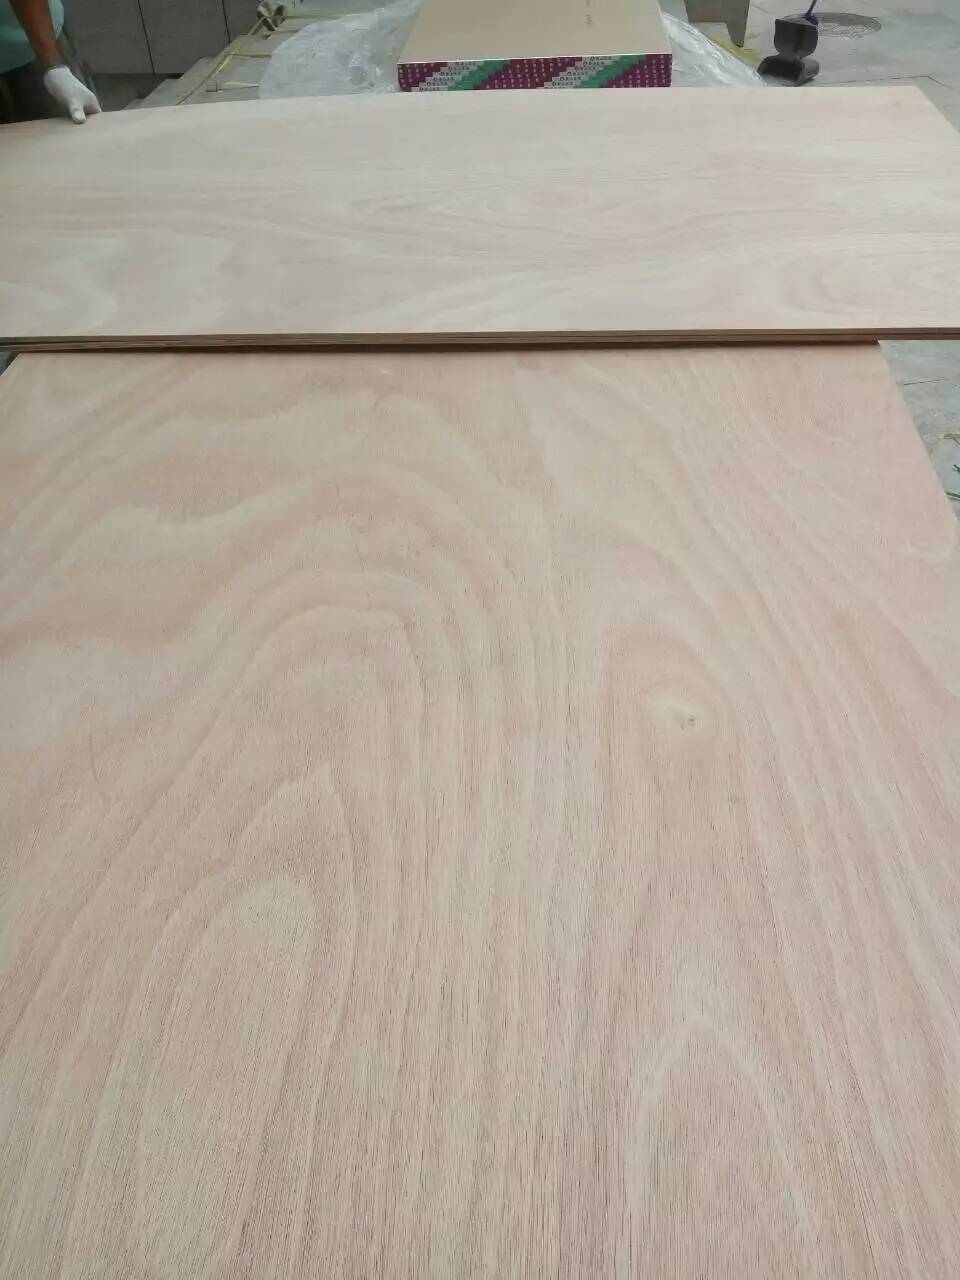 胶合板生产厂家批发销售E1环保胶水杨木桉木混合芯三夹板五夹板多层板材